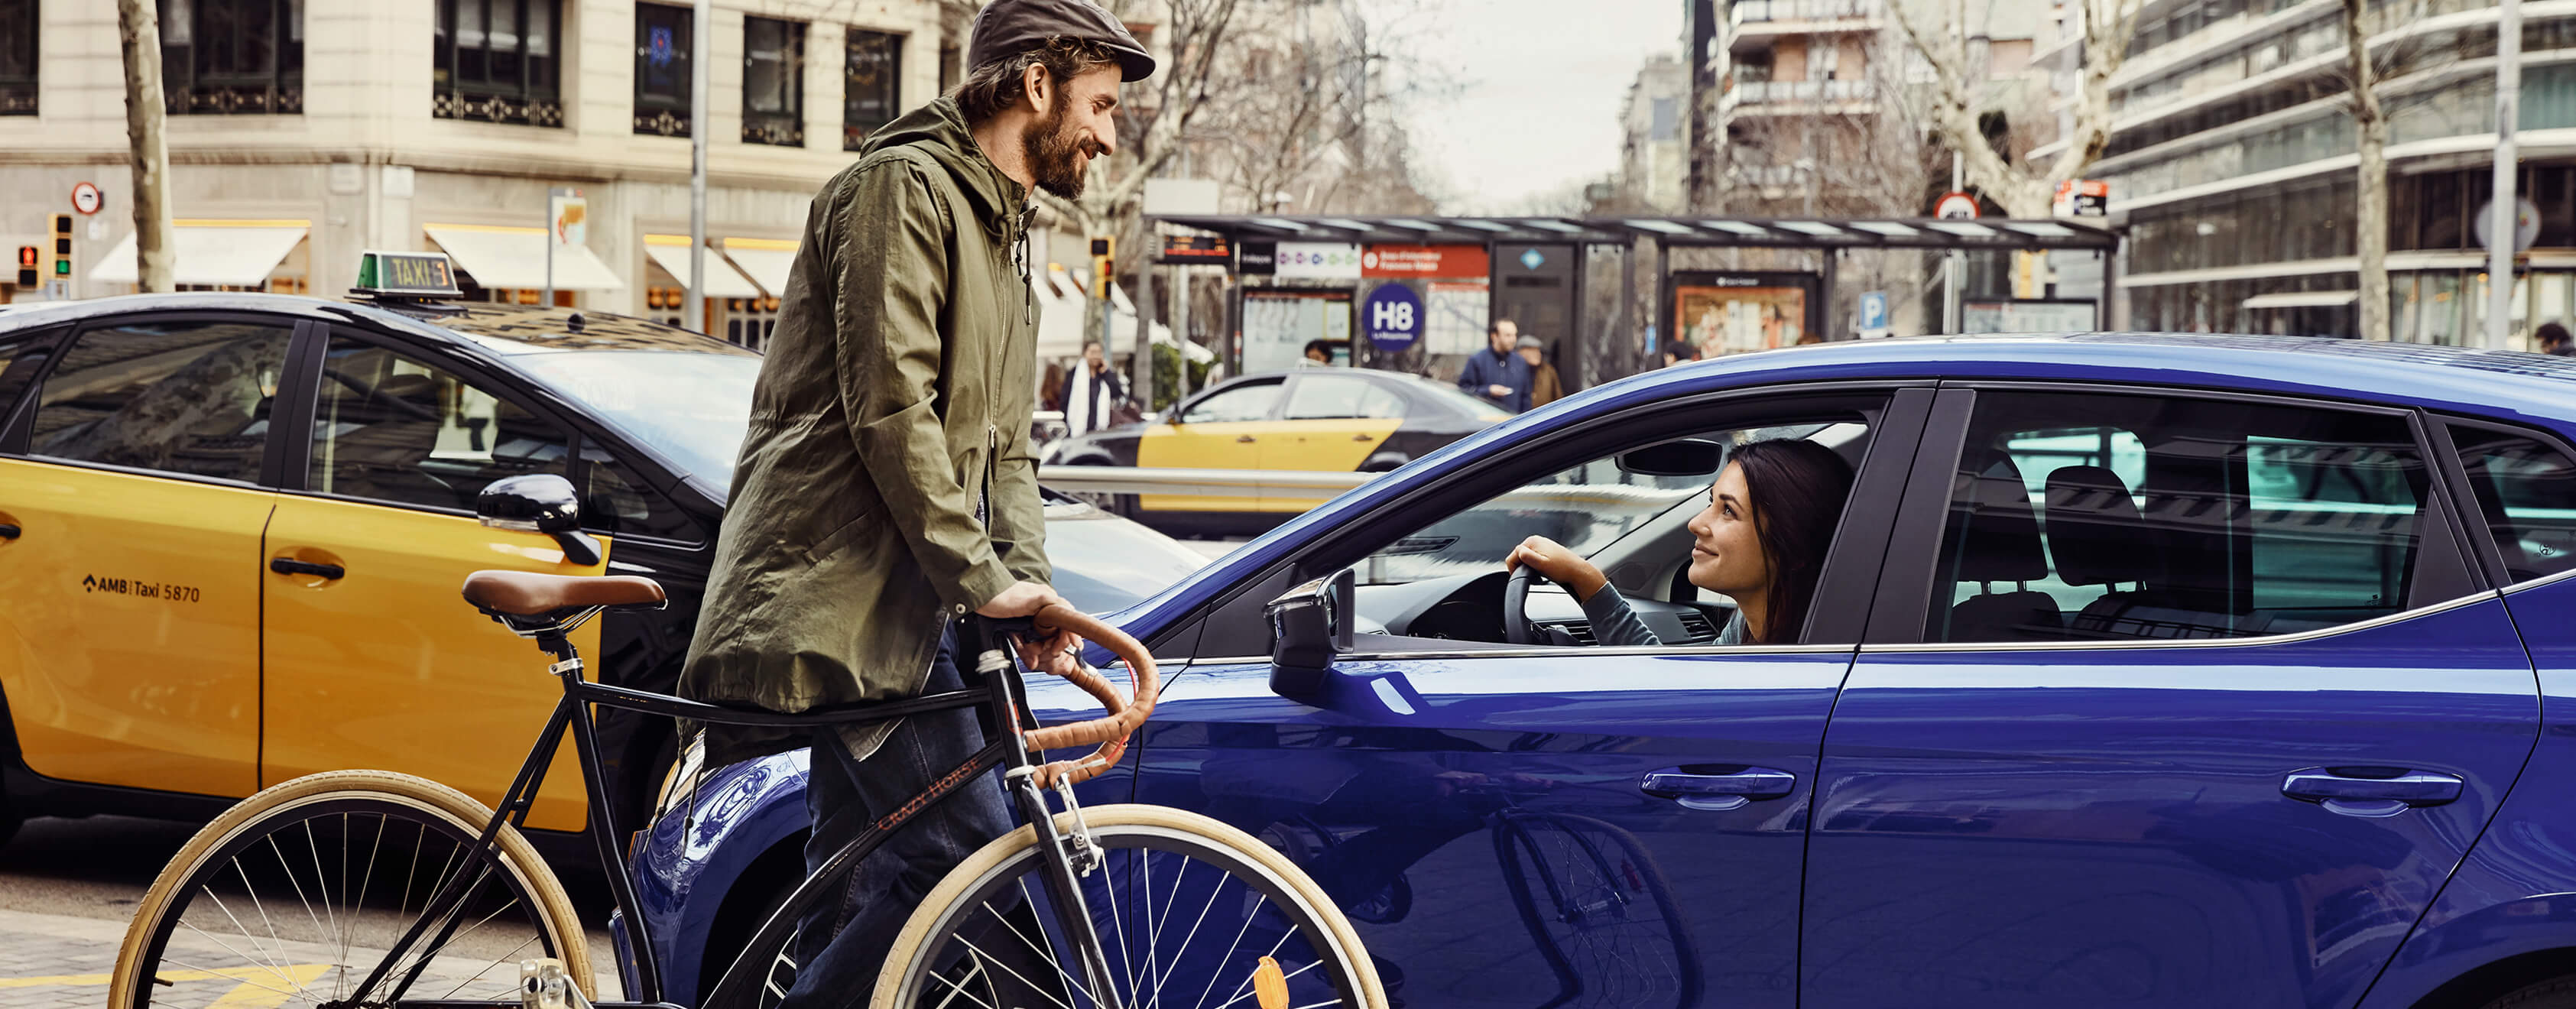 Servizi, assicurazione e manutenzione per vetture nuove SEAT – Uomo in bicicletta davanti a una vettura SEAT